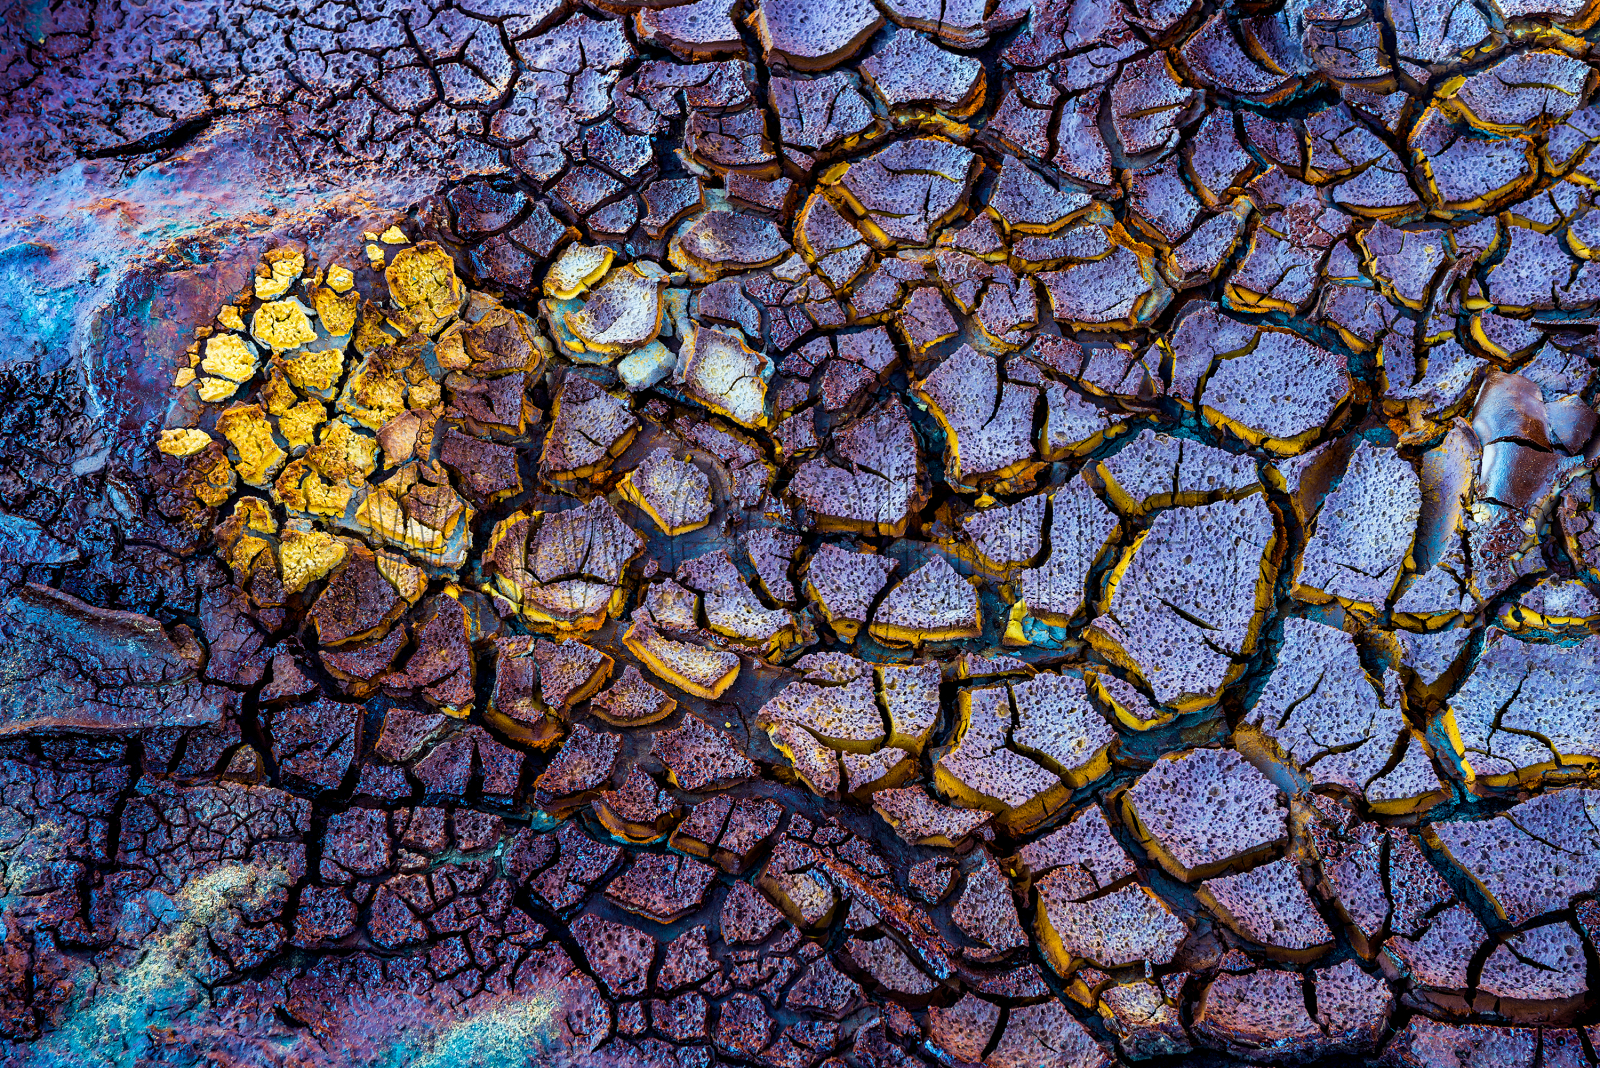 Texturas de Riotinto. Extraídas en la orilla del río donde se acumulan estos sedimentos que colorean el barro.